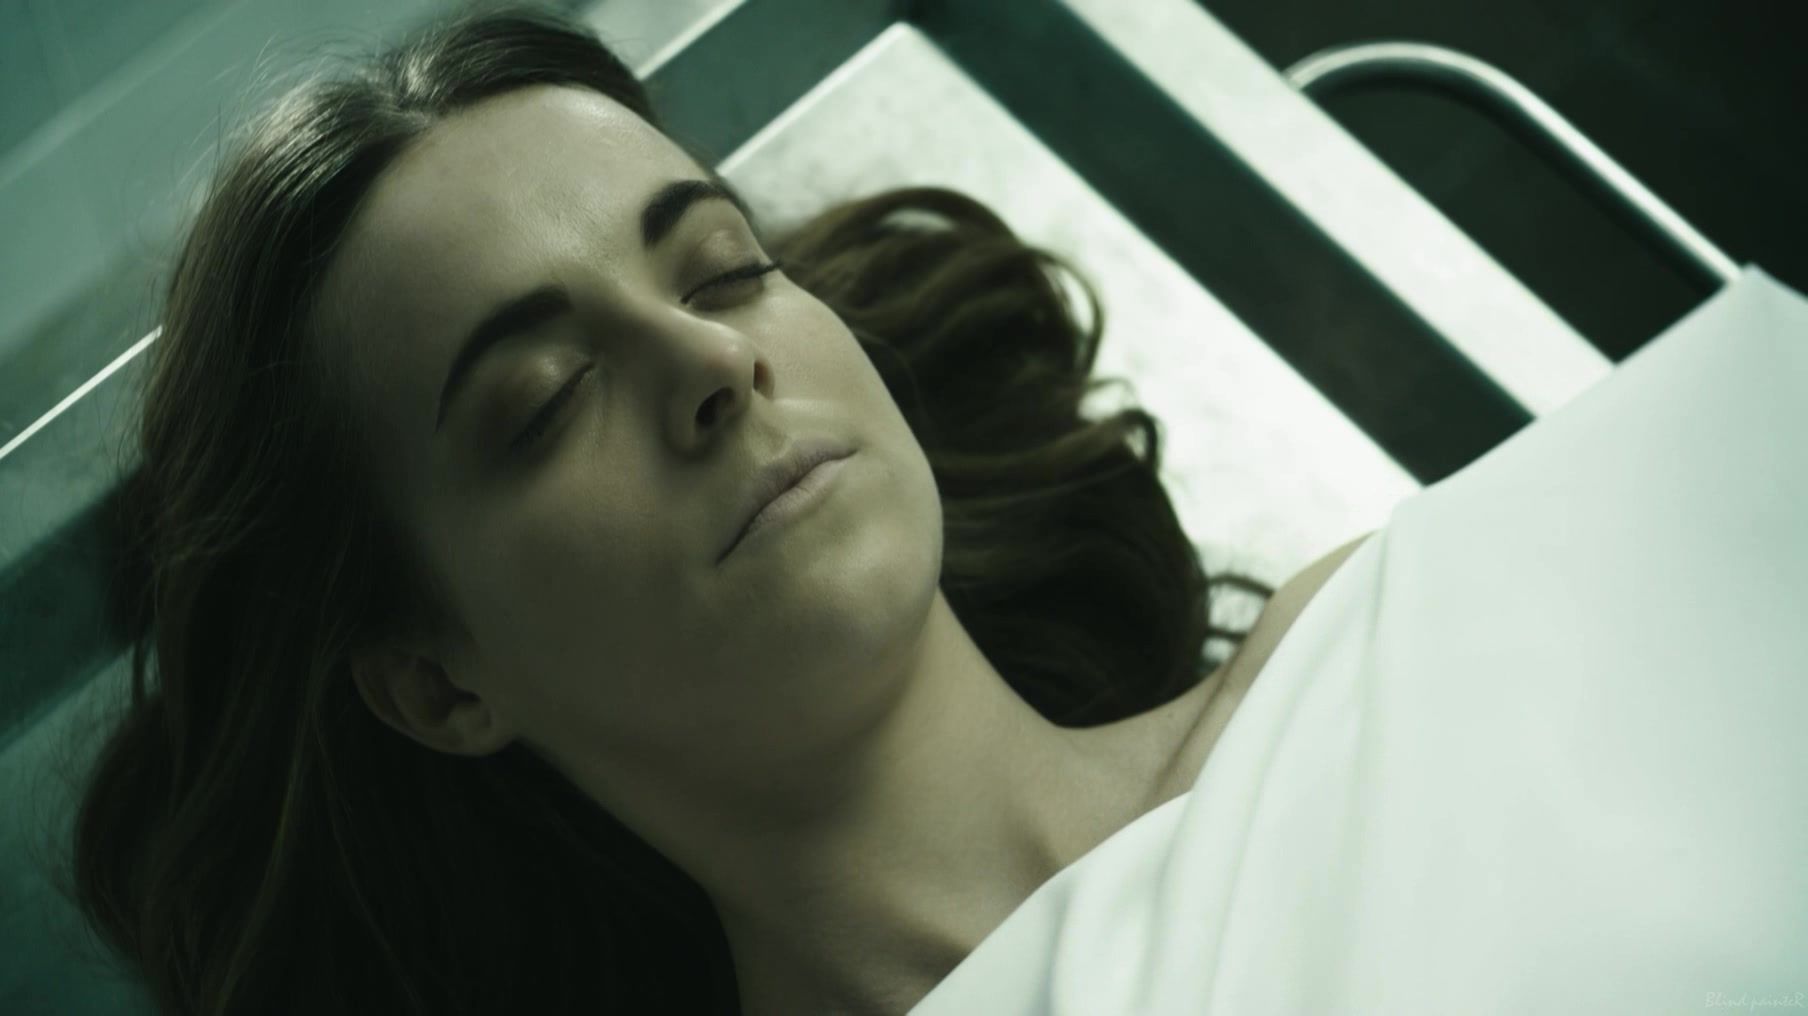 Gemidos Sex video Alba Ribas nude - El cadaver de Anna Fritz (2015) Caseiro - 2